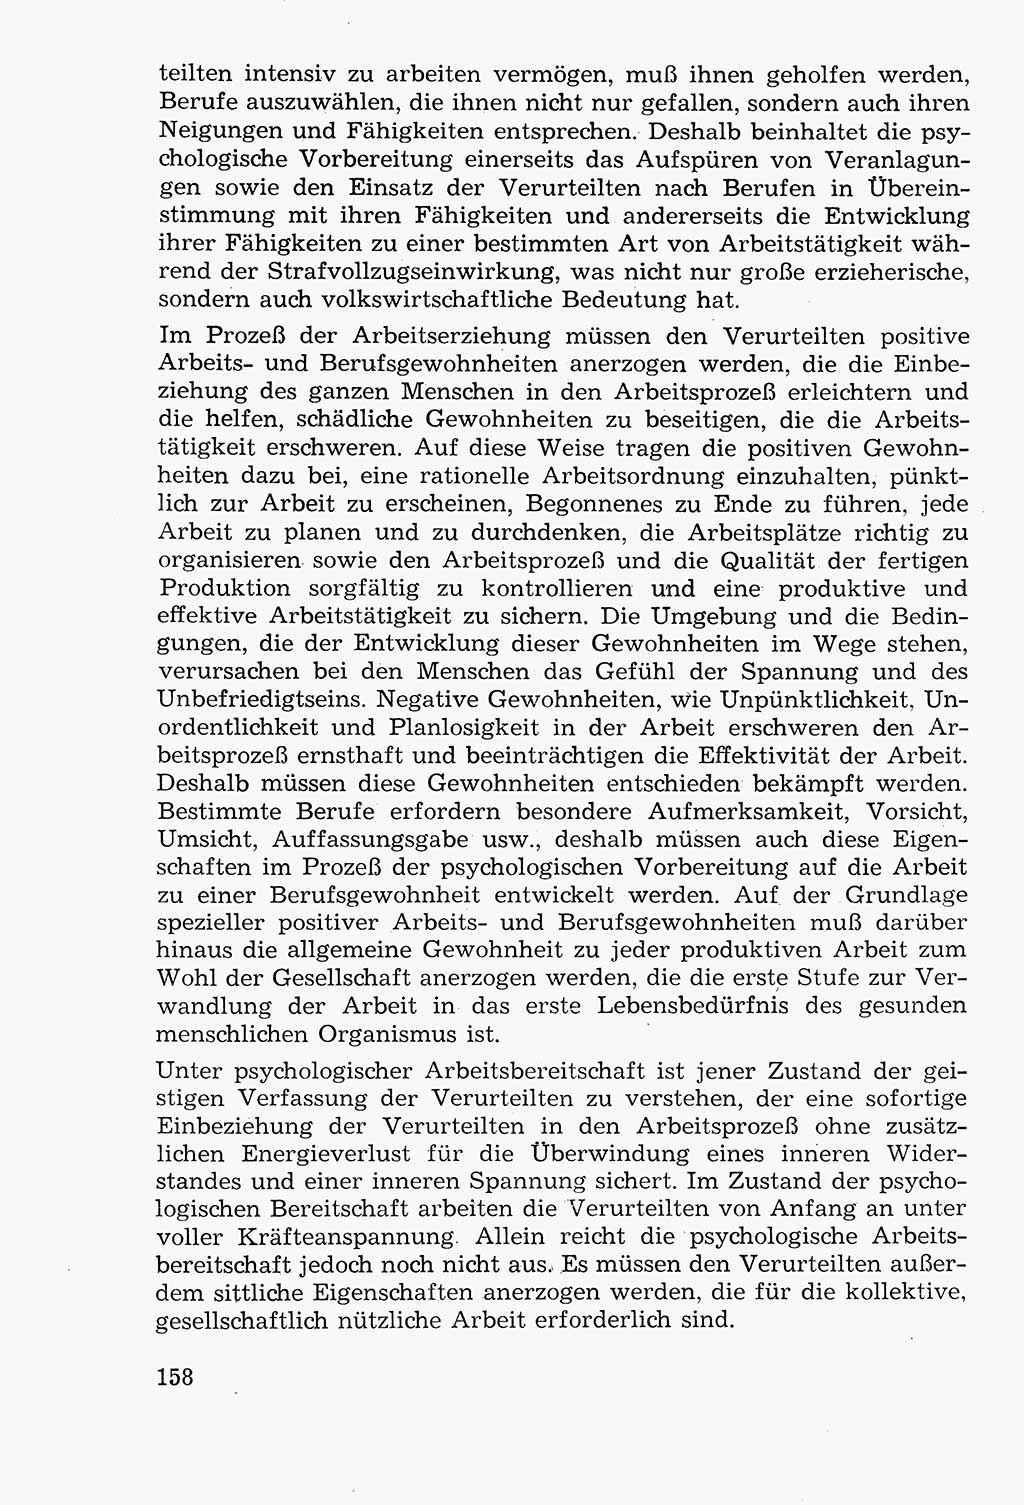 Lehrbuch der Strafvollzugspädagogik [Deutsche Demokratische Republik (DDR)] 1969, Seite 158 (Lb. SV-Pd. DDR 1969, S. 158)